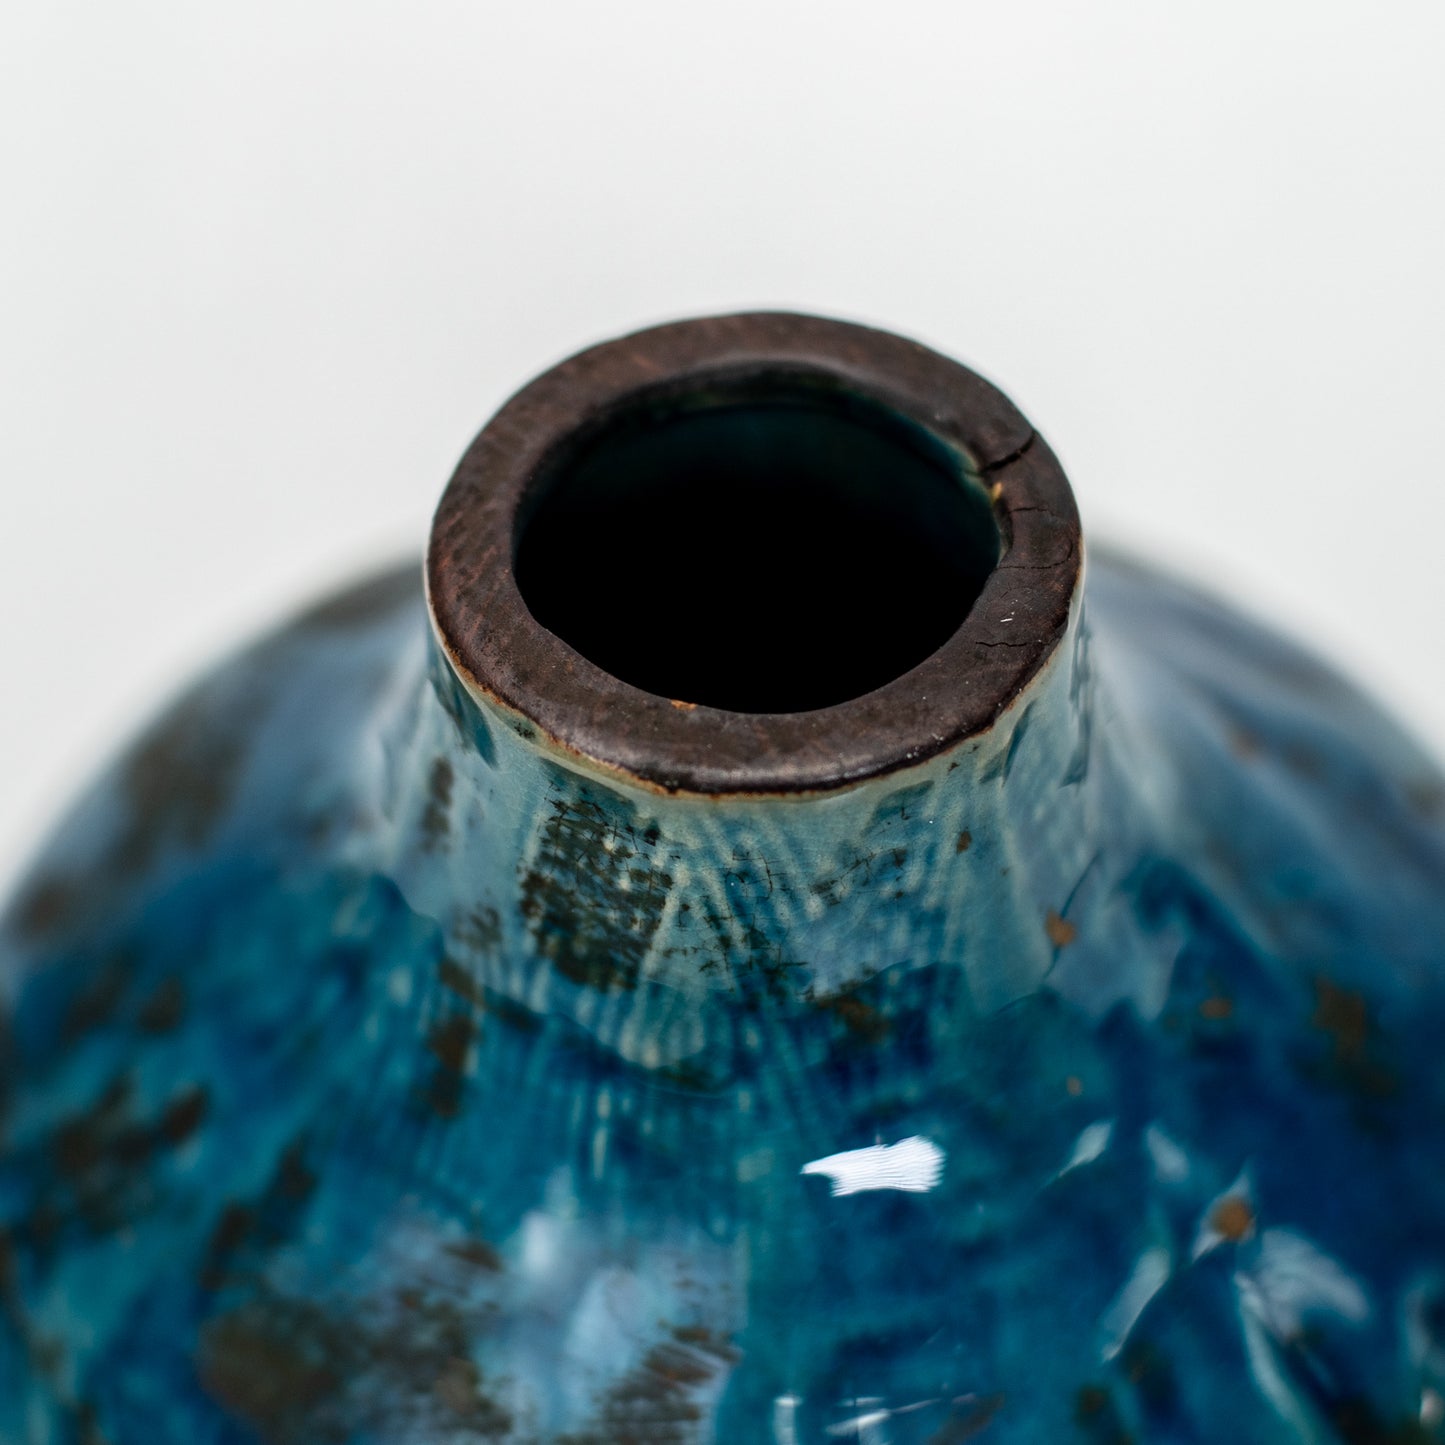 Aqua Blue Vase